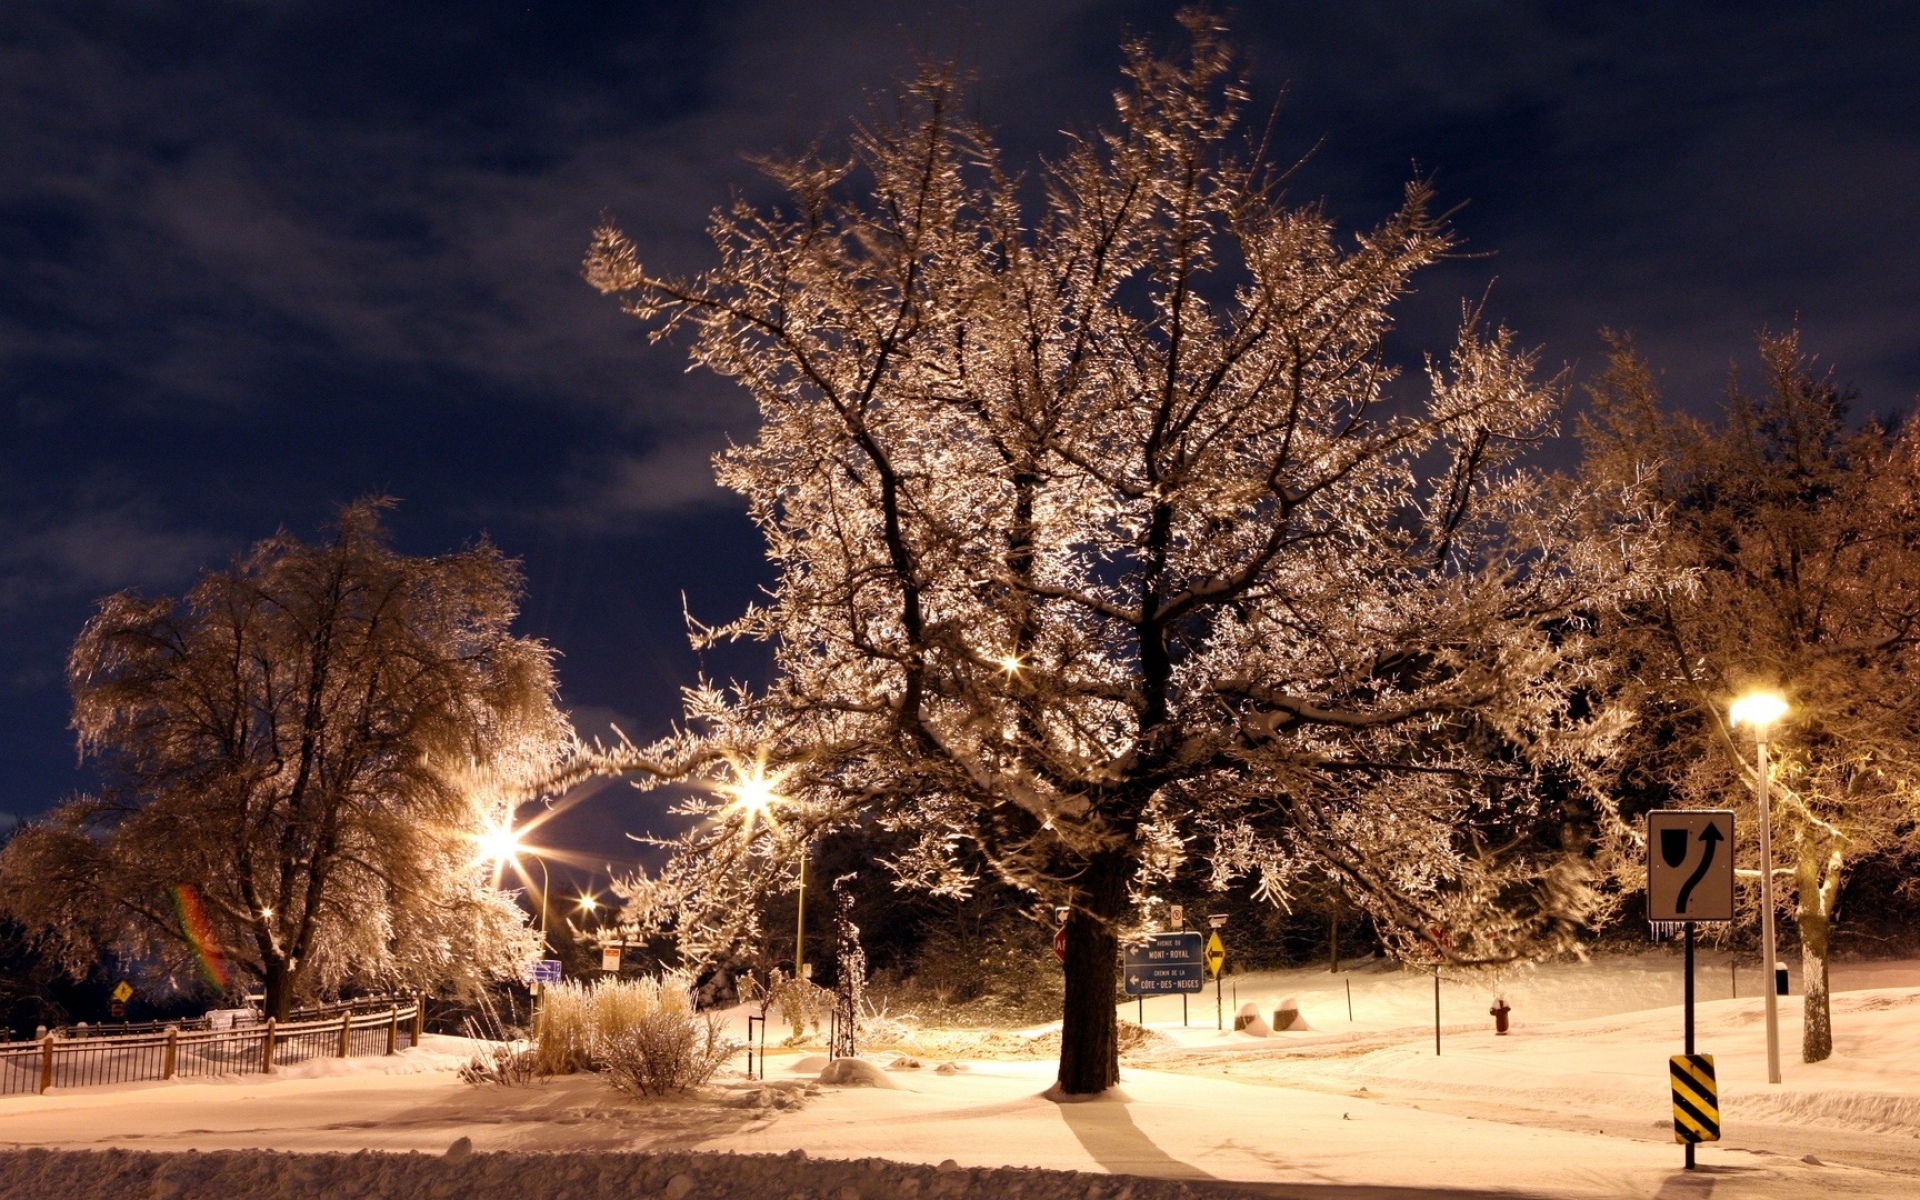 6 вечера зимой. Зимний вечер. Зима. К вечеру. Зимний город. Деревья в снегу.